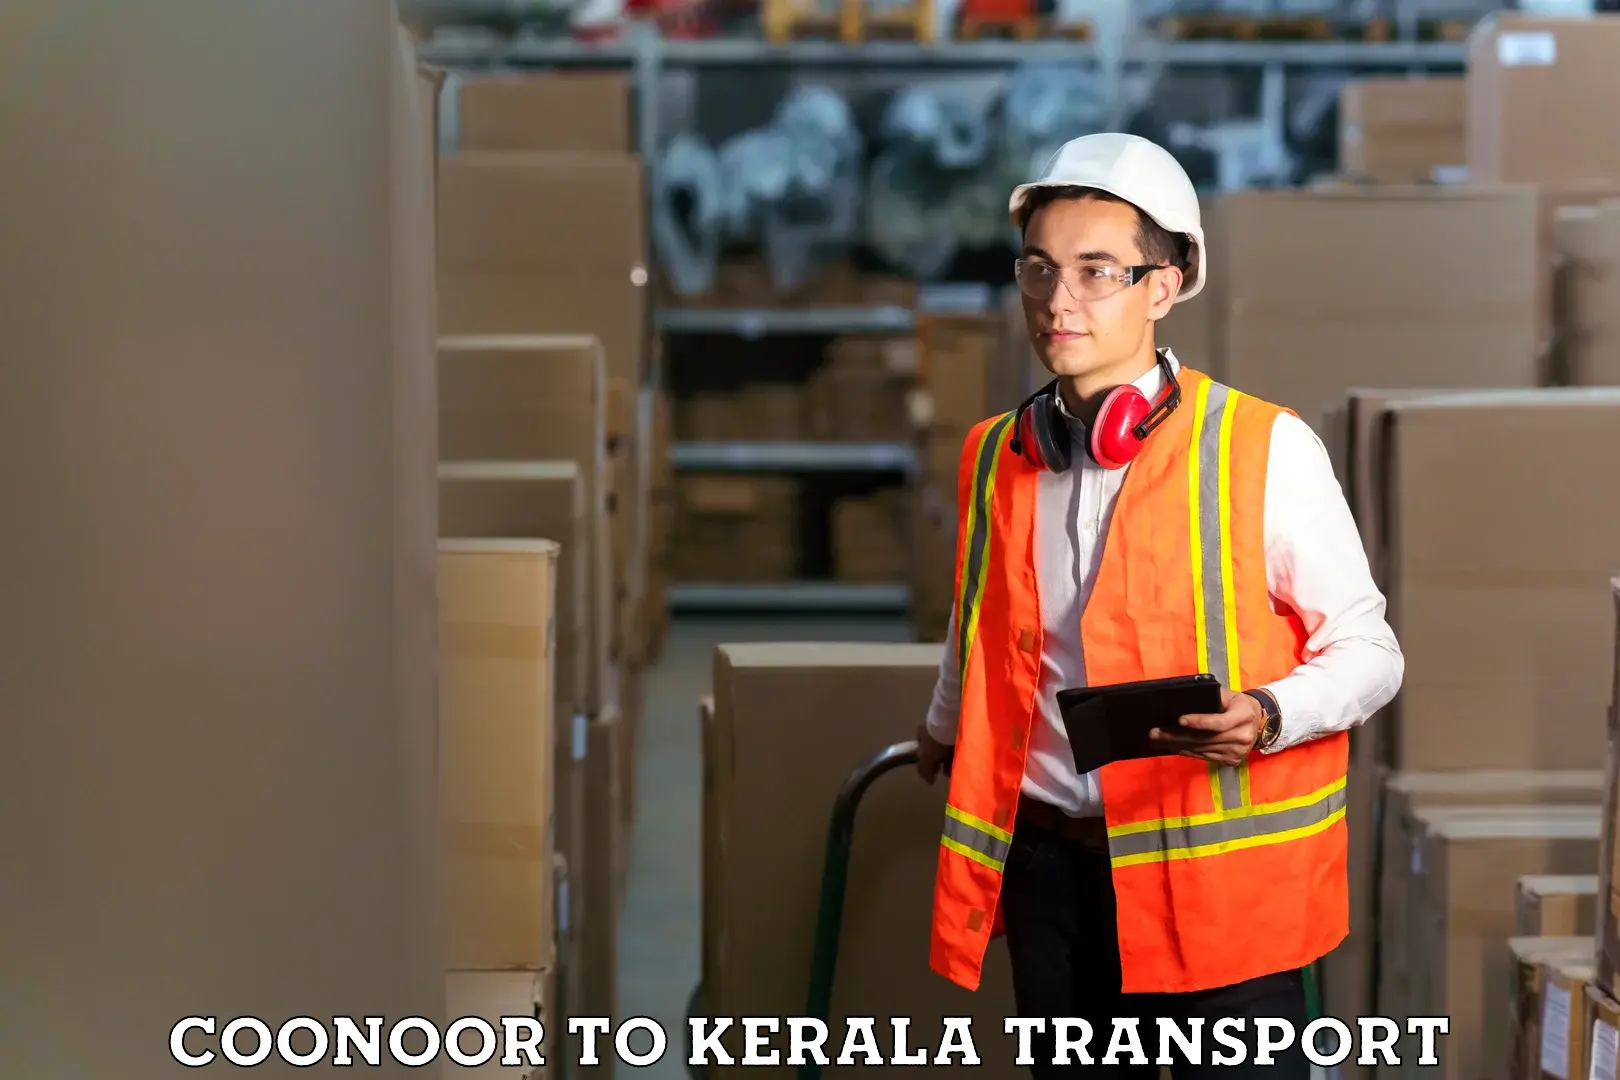 Pick up transport service Coonoor to Trivandrum